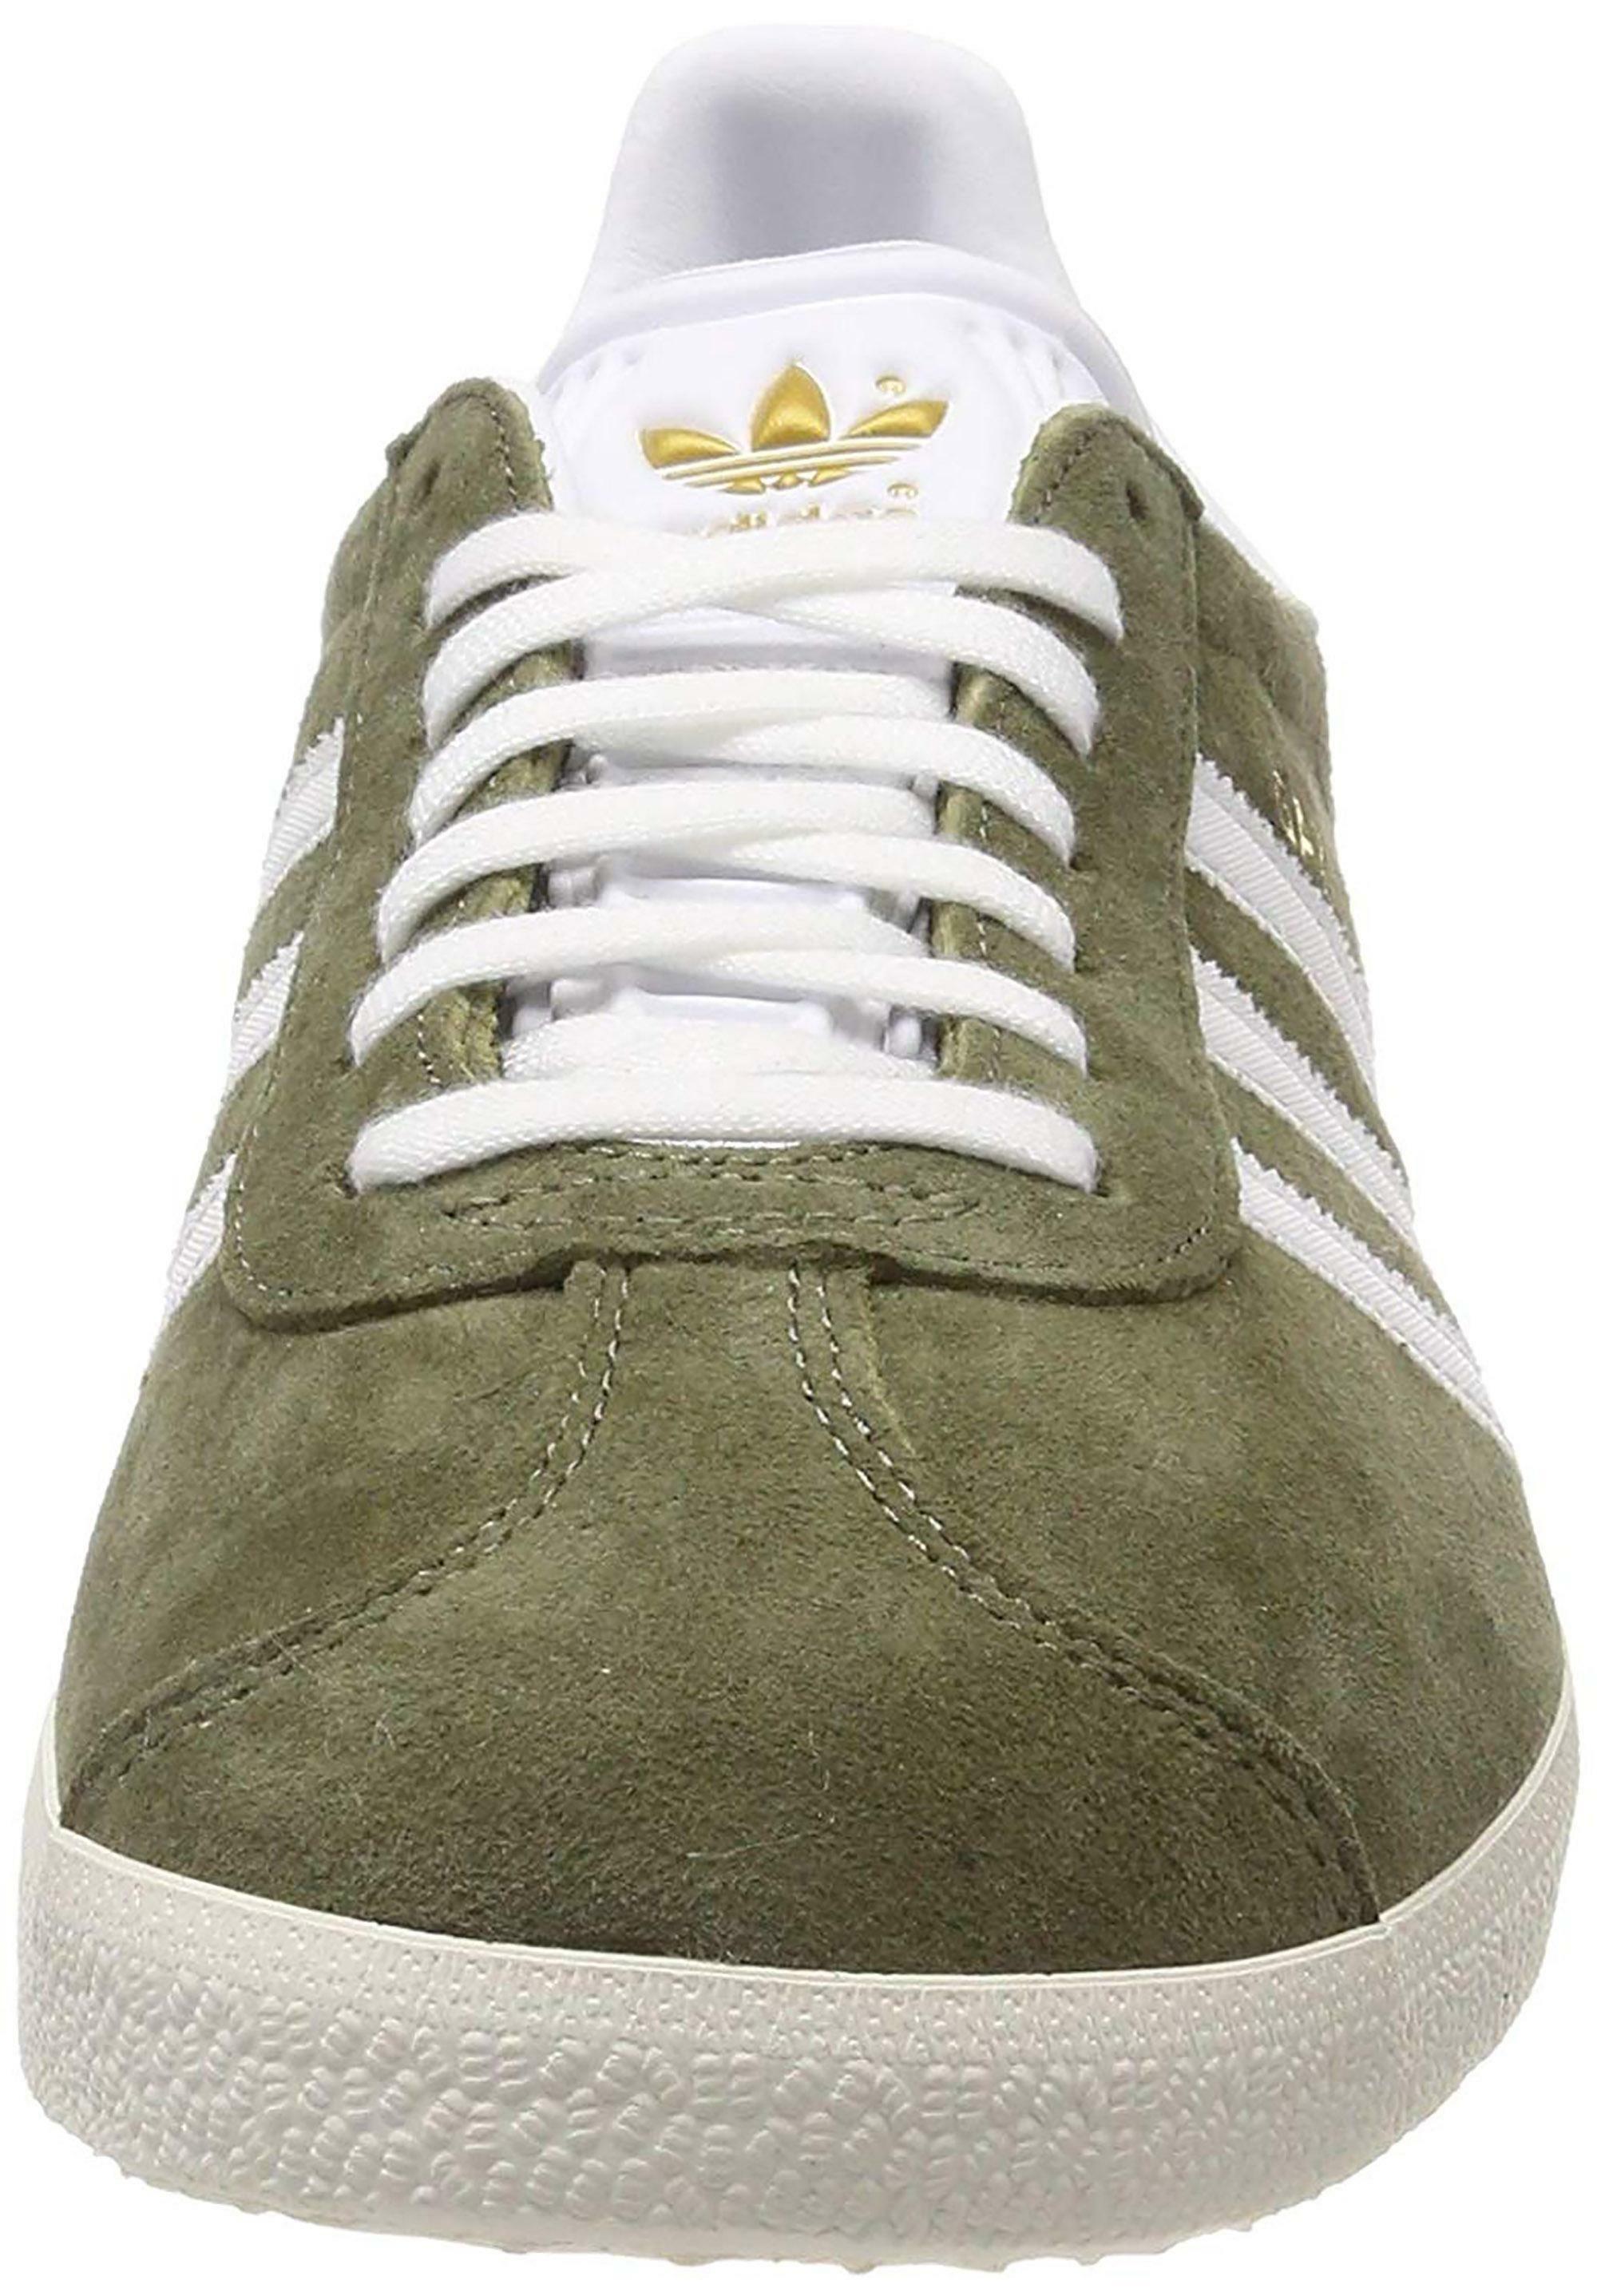 adidas adidas gazelle w scarpe sportive donna verdi cg6062